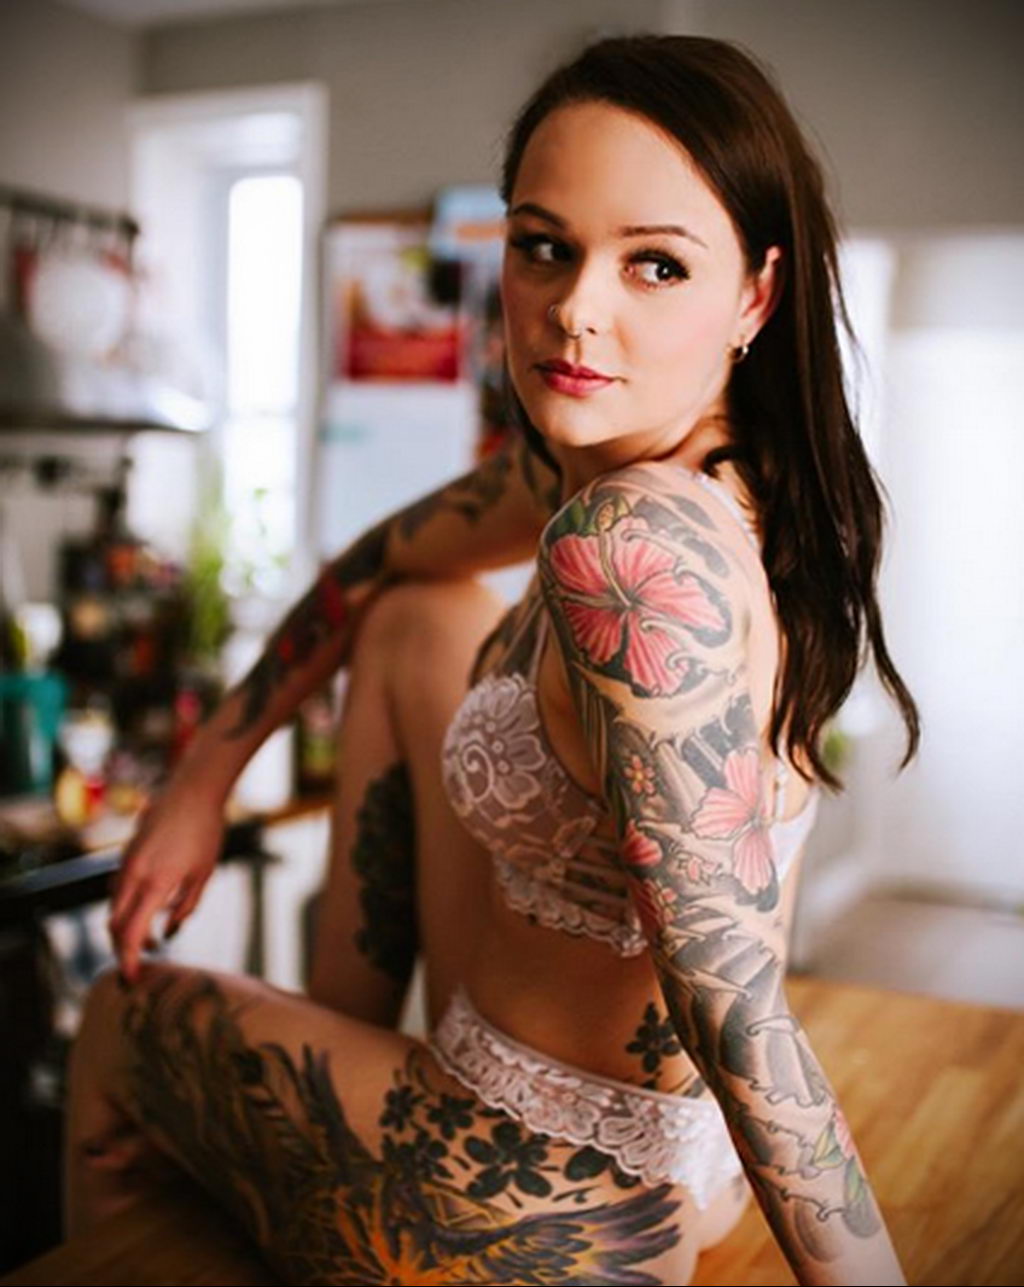 Статьи о прирсинге. annoir_suicide - фото красивой девушки с татуировками д...